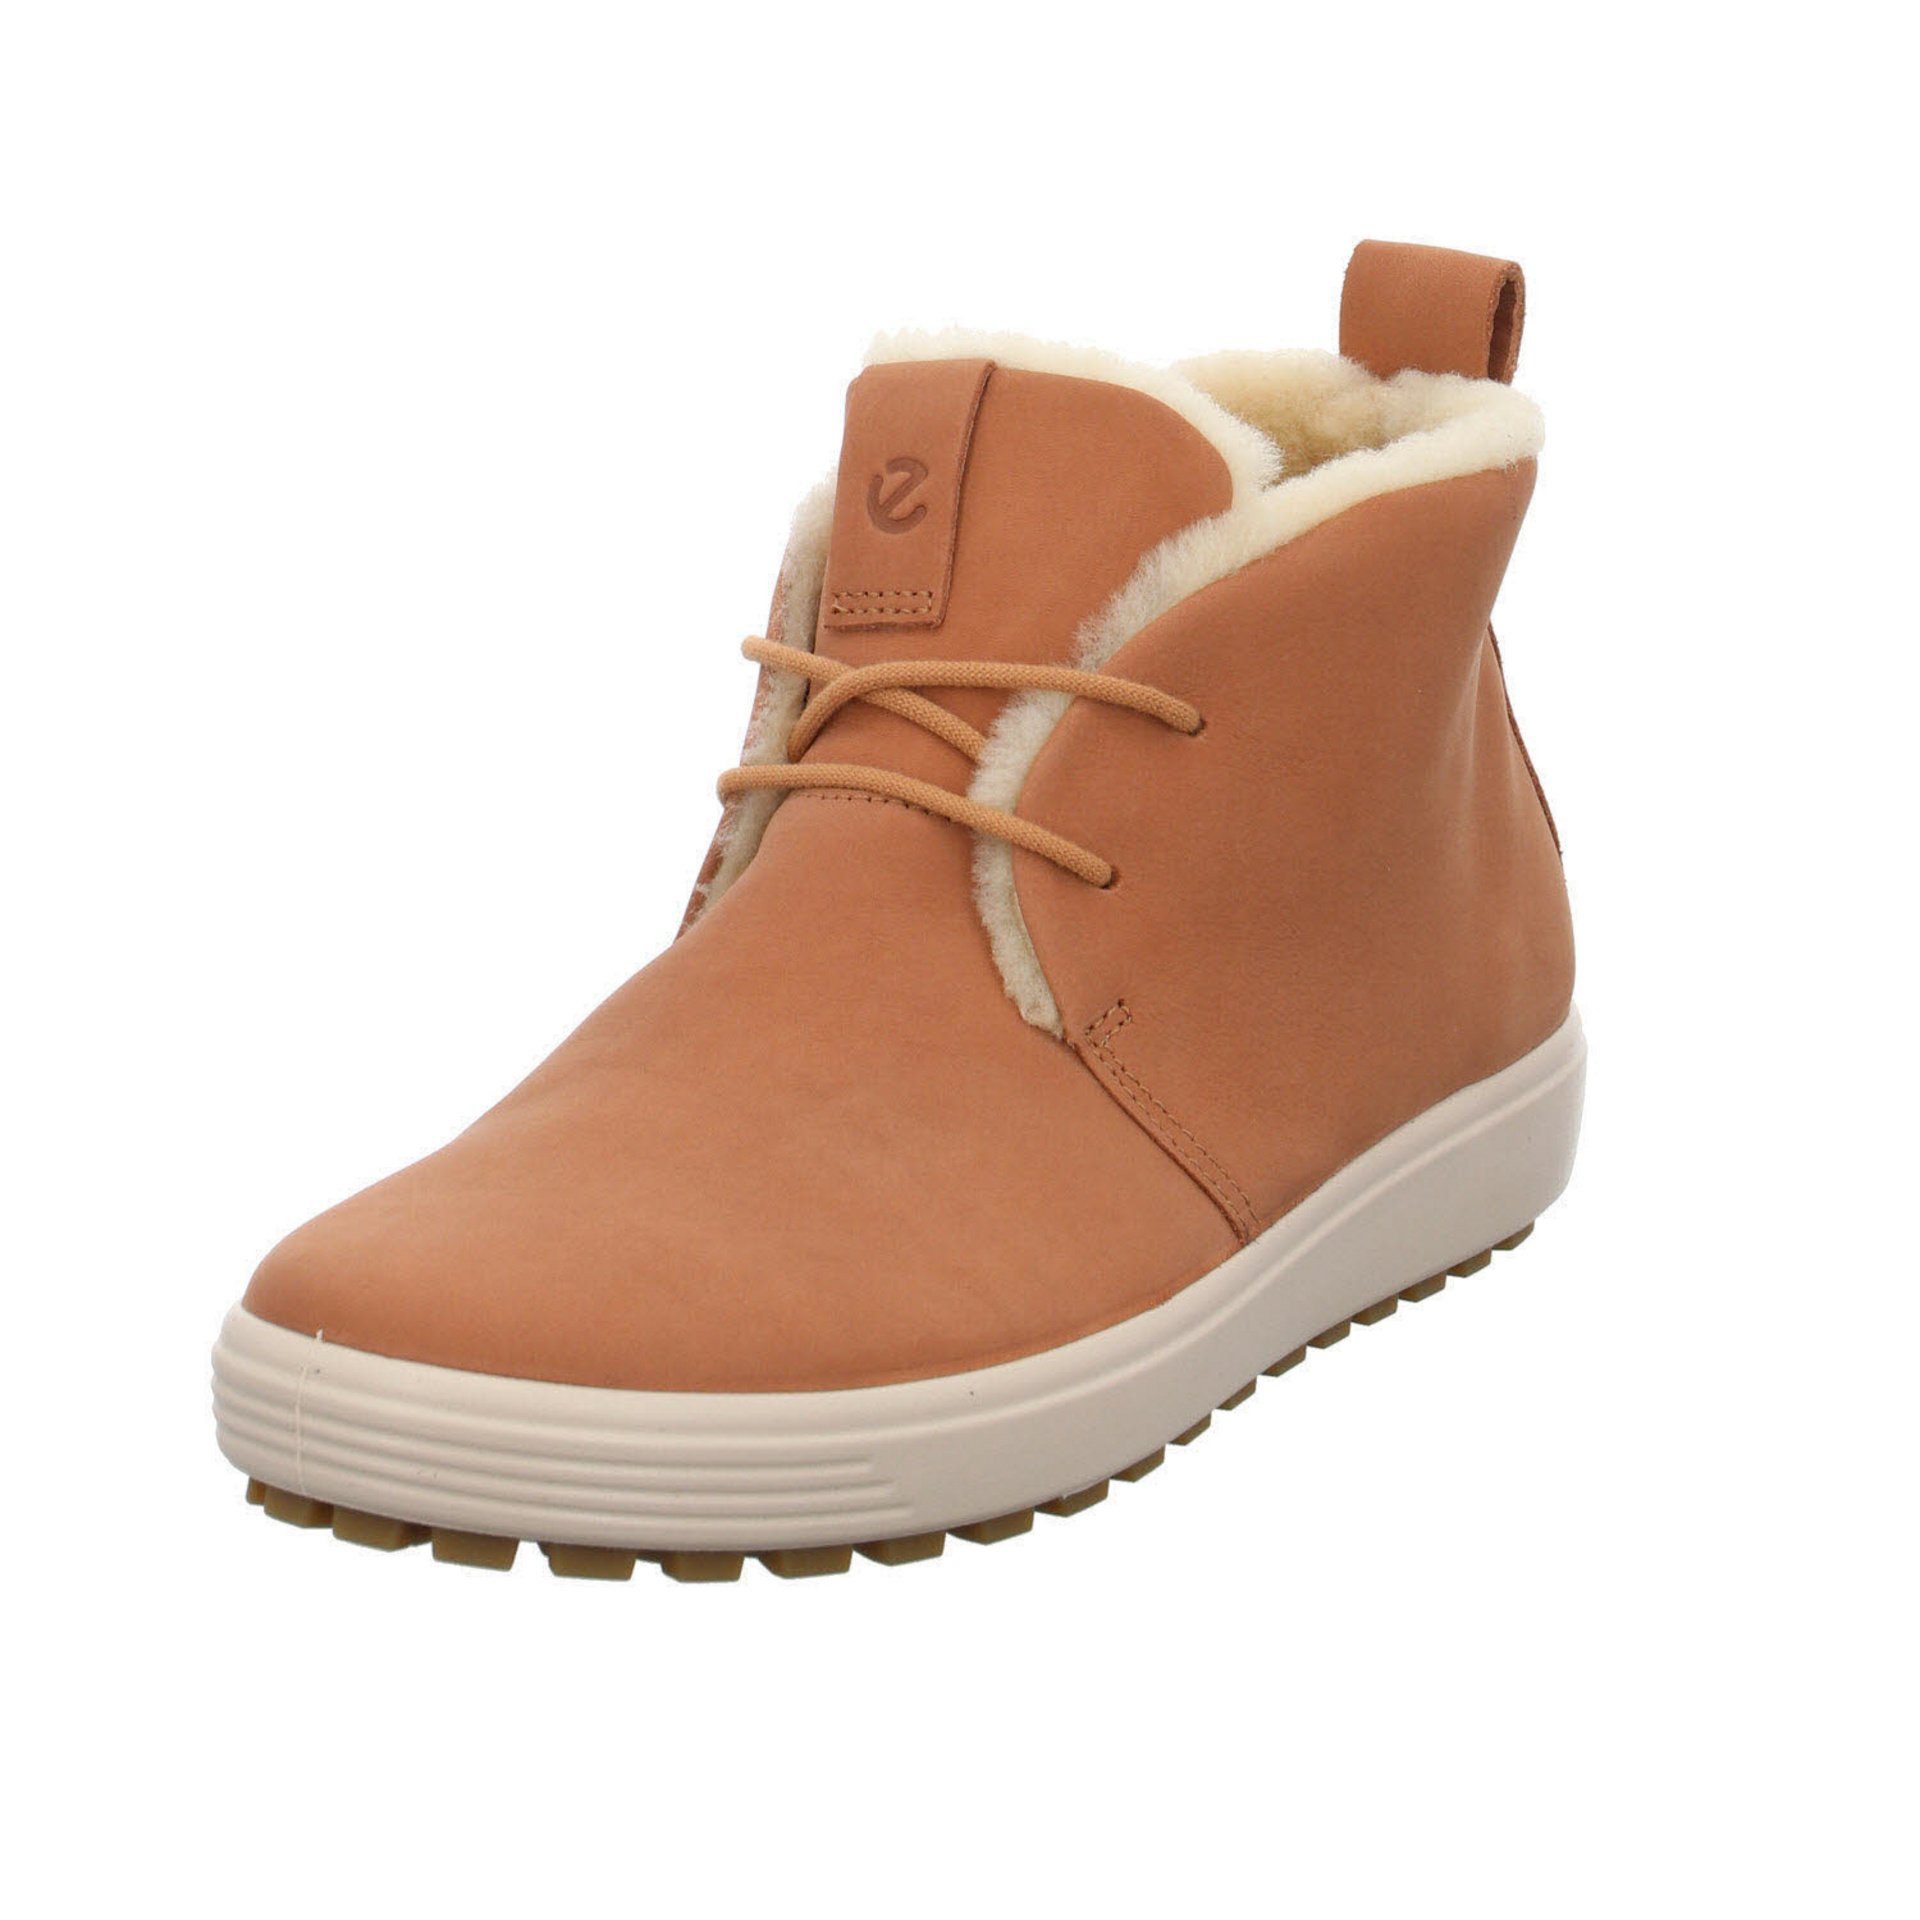 Ecco »Damen Stiefeletten Schuhe Soft 7 Tred Boots« Schnürstiefelette  Glattleder online kaufen | OTTO